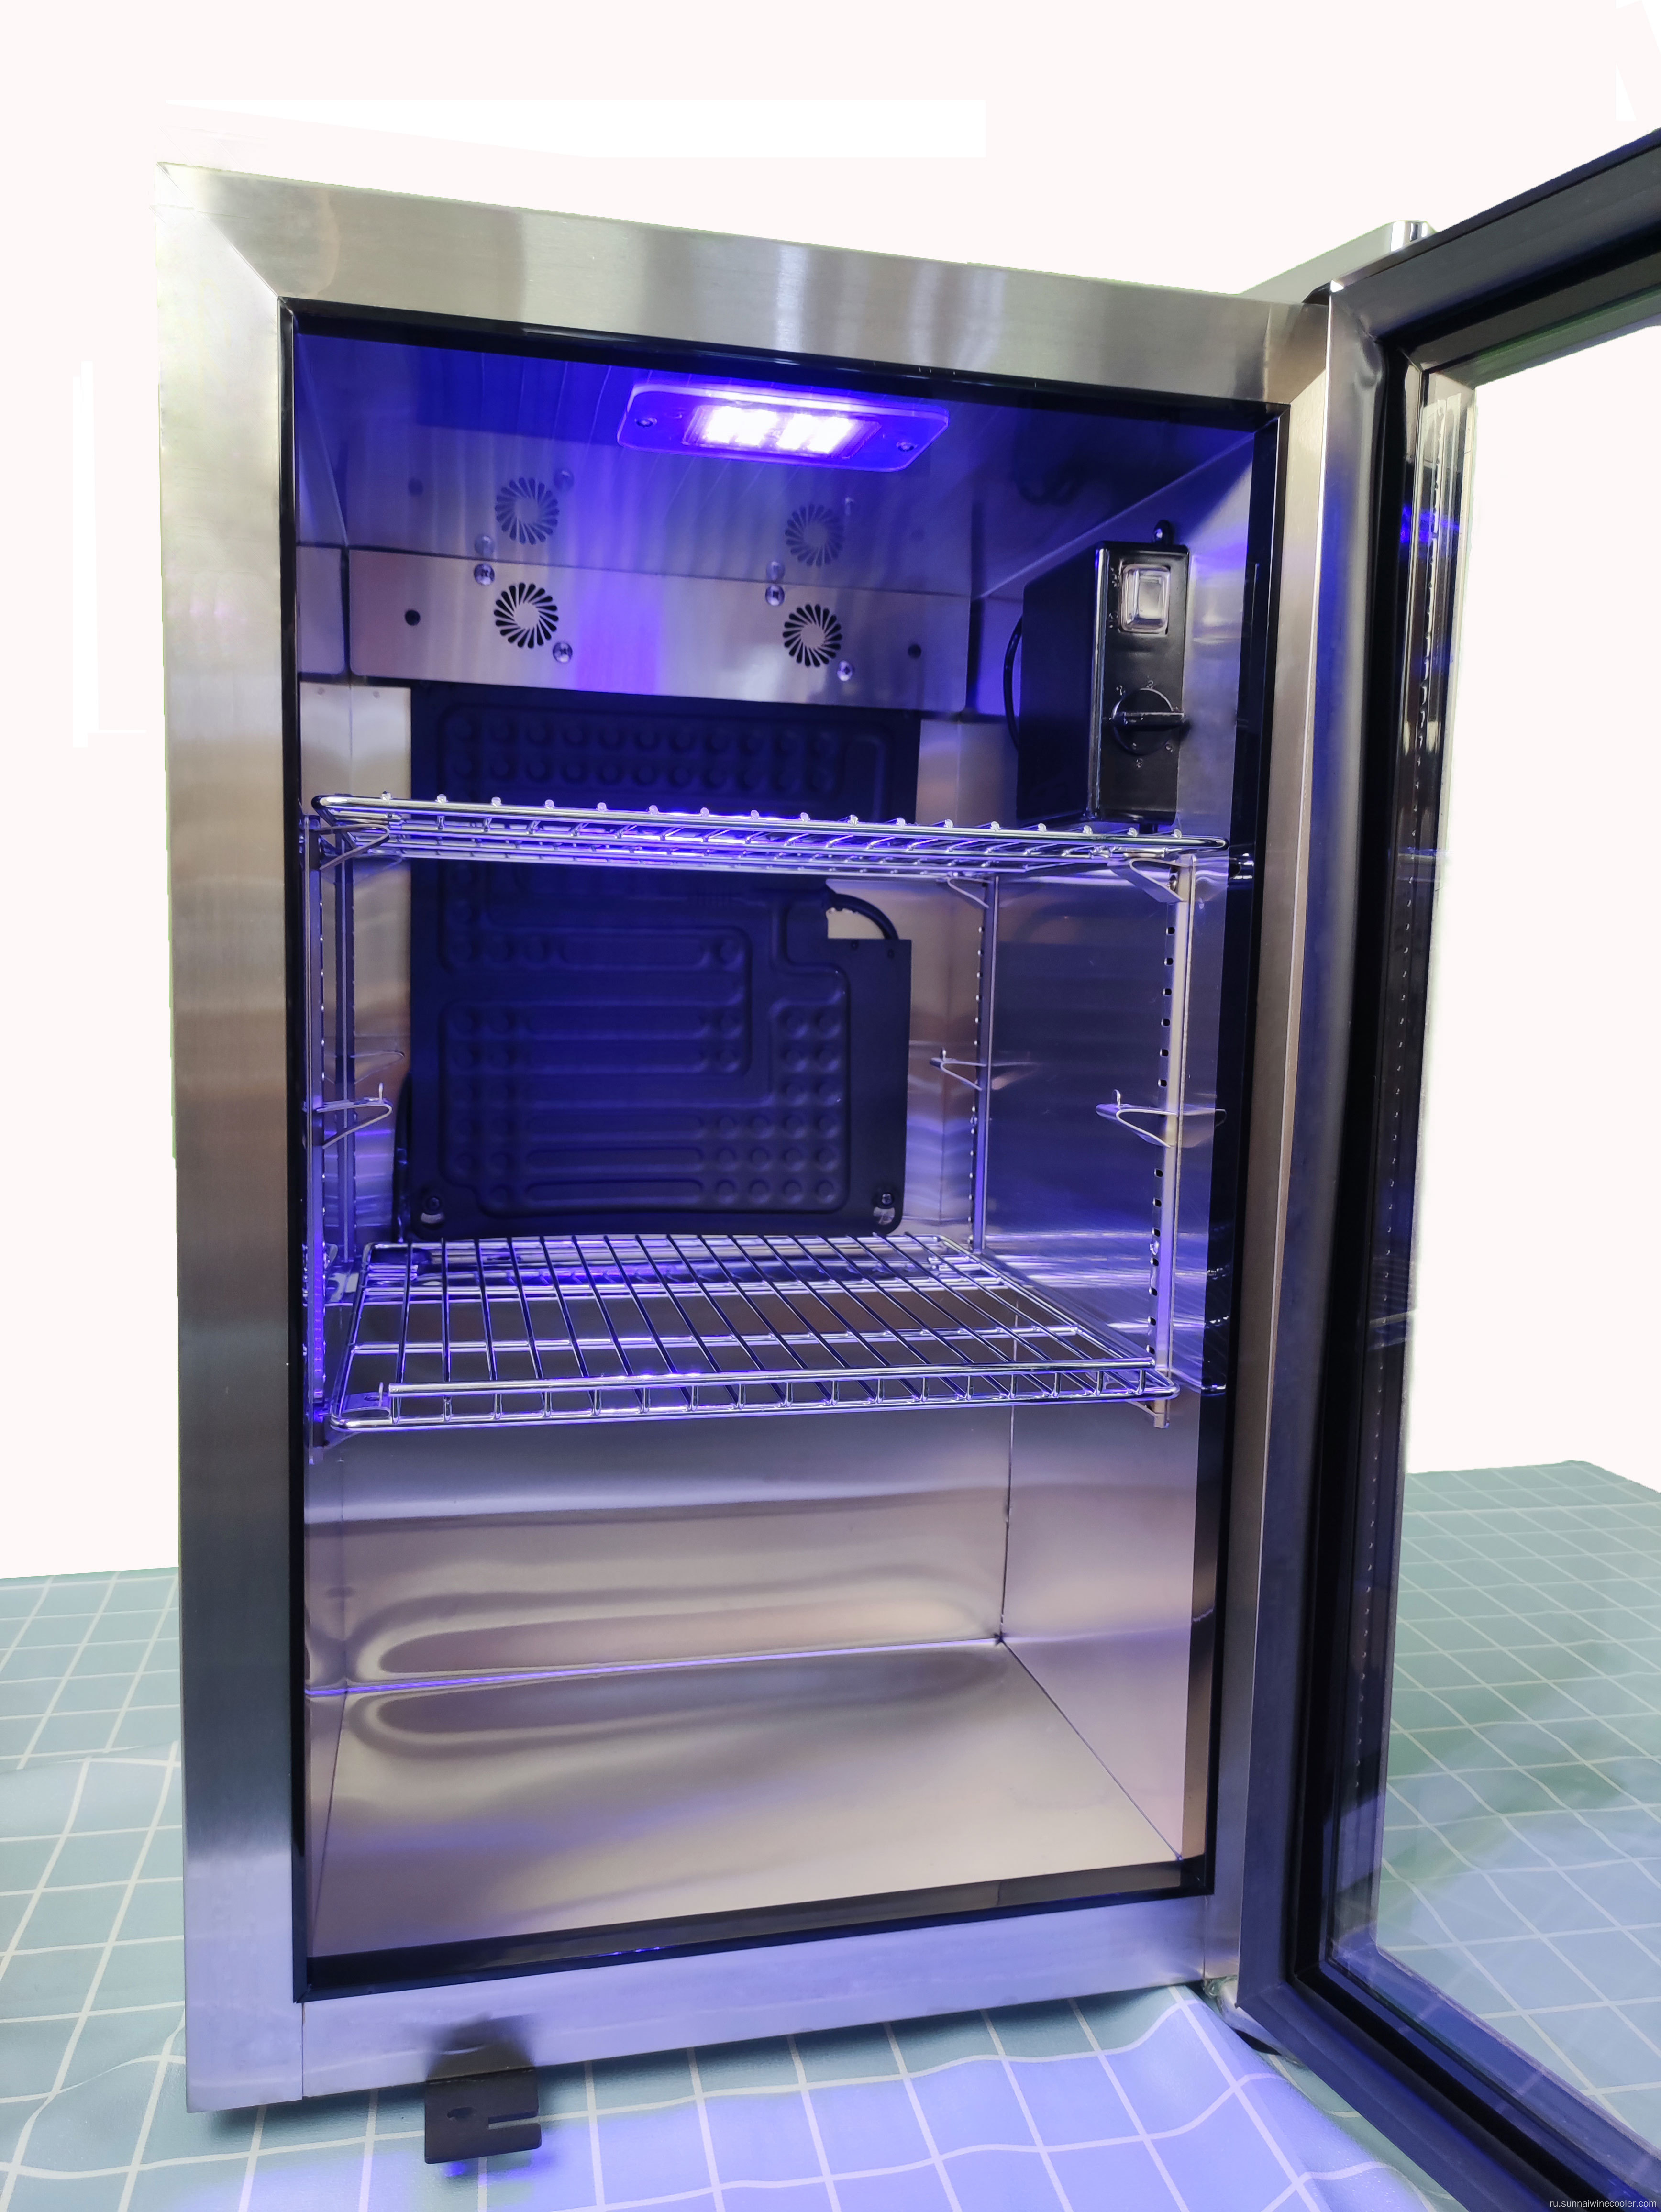 Компактный холодильник Compressor Compact Holrigerator для газированного пива